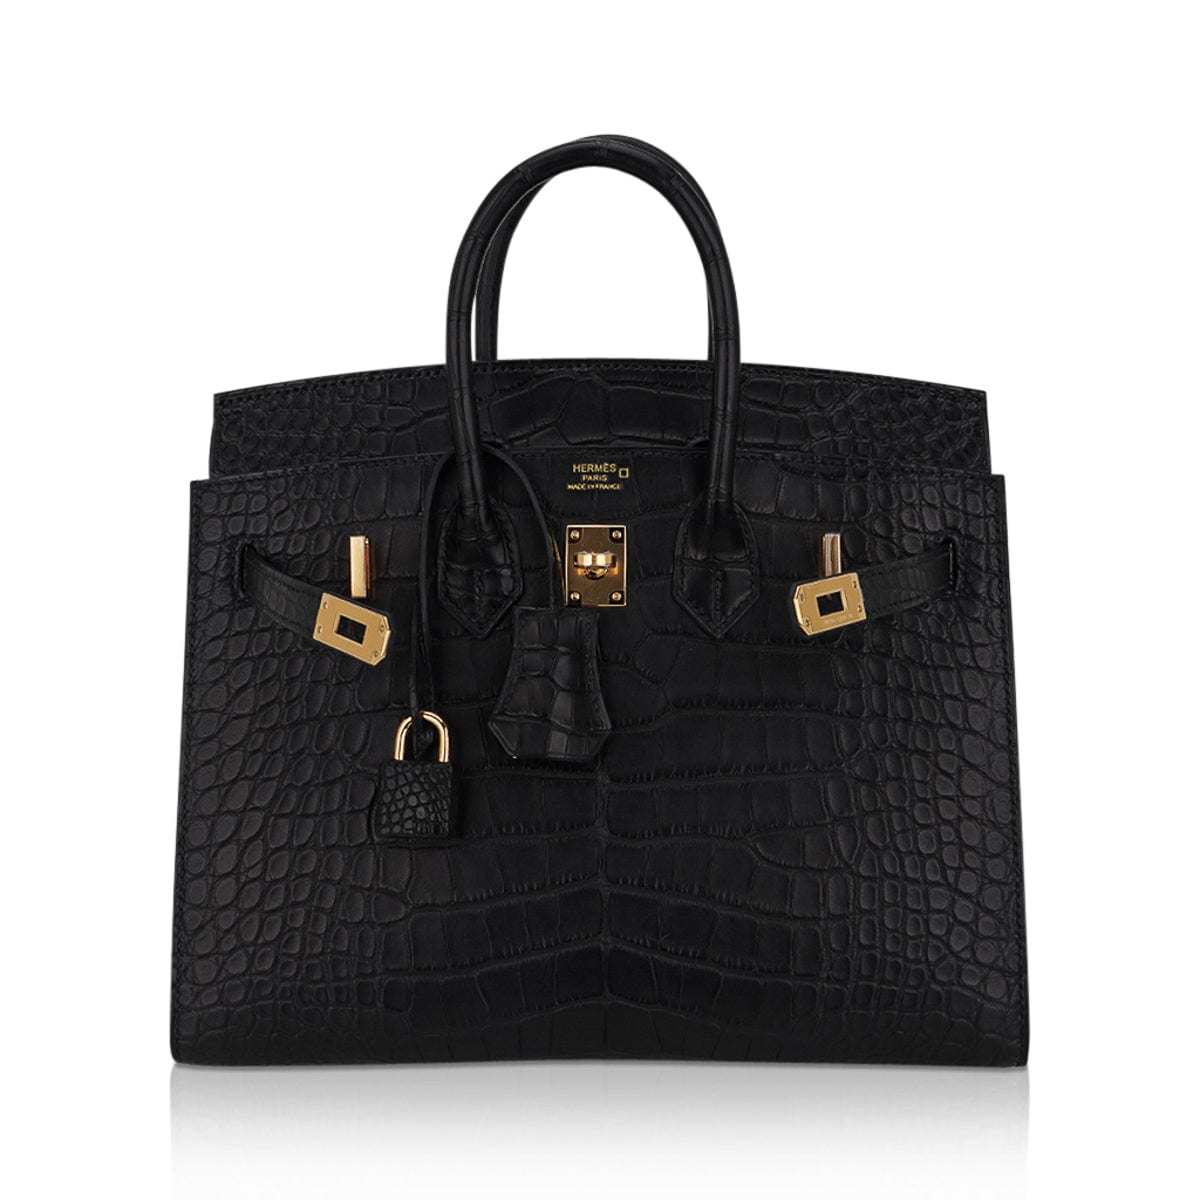 Hermes Birkin 25 Sellier Bag in Black Matte Alligator with Gold